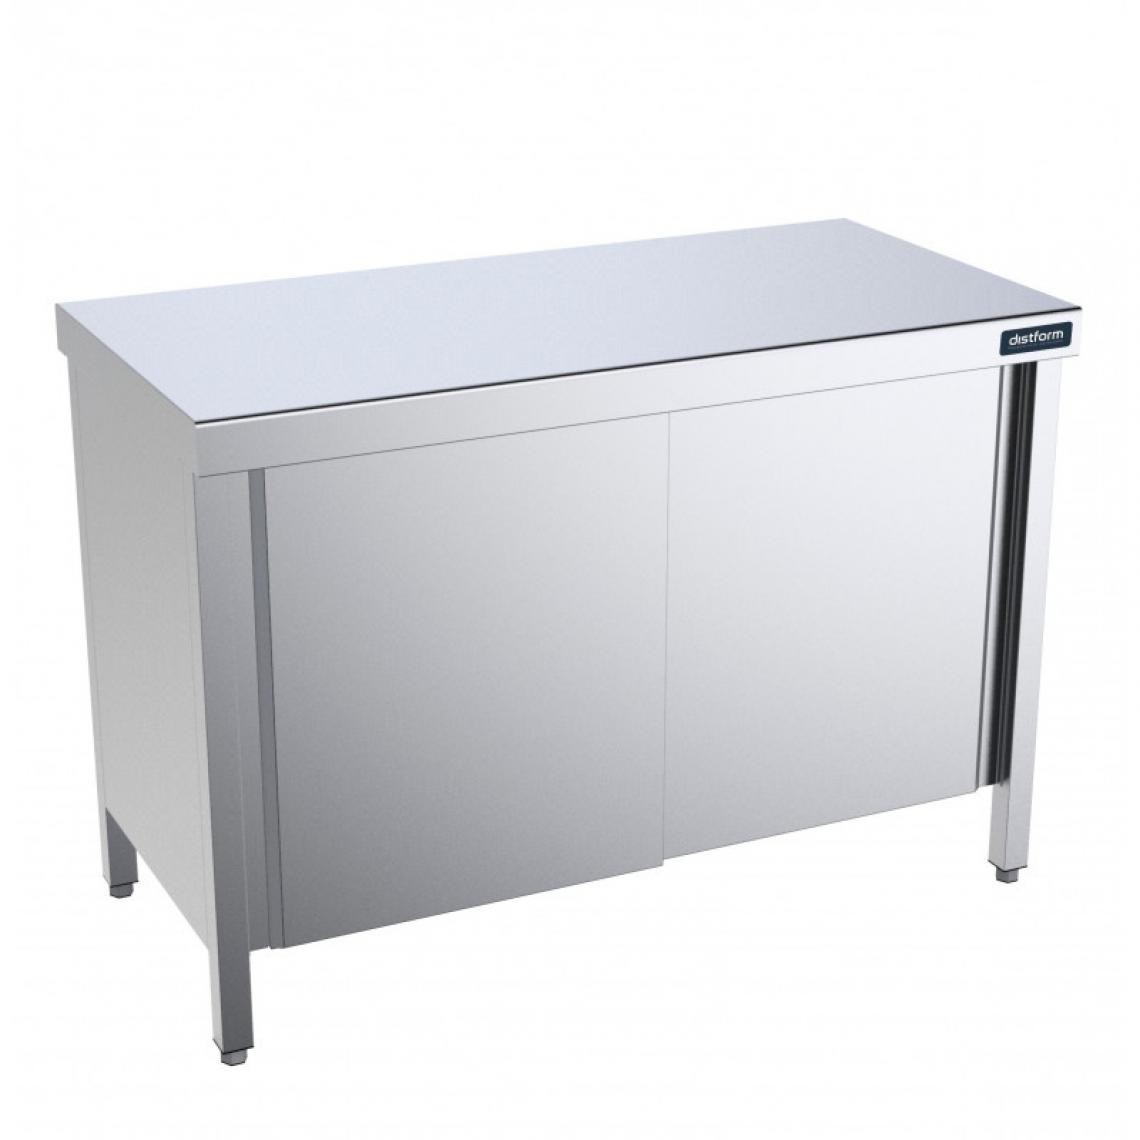 DISTFORM - Table Centrale avec Portes Battantes Profondeur 700mm - Distform - Acier inoxydable1800x700 - Tables à manger